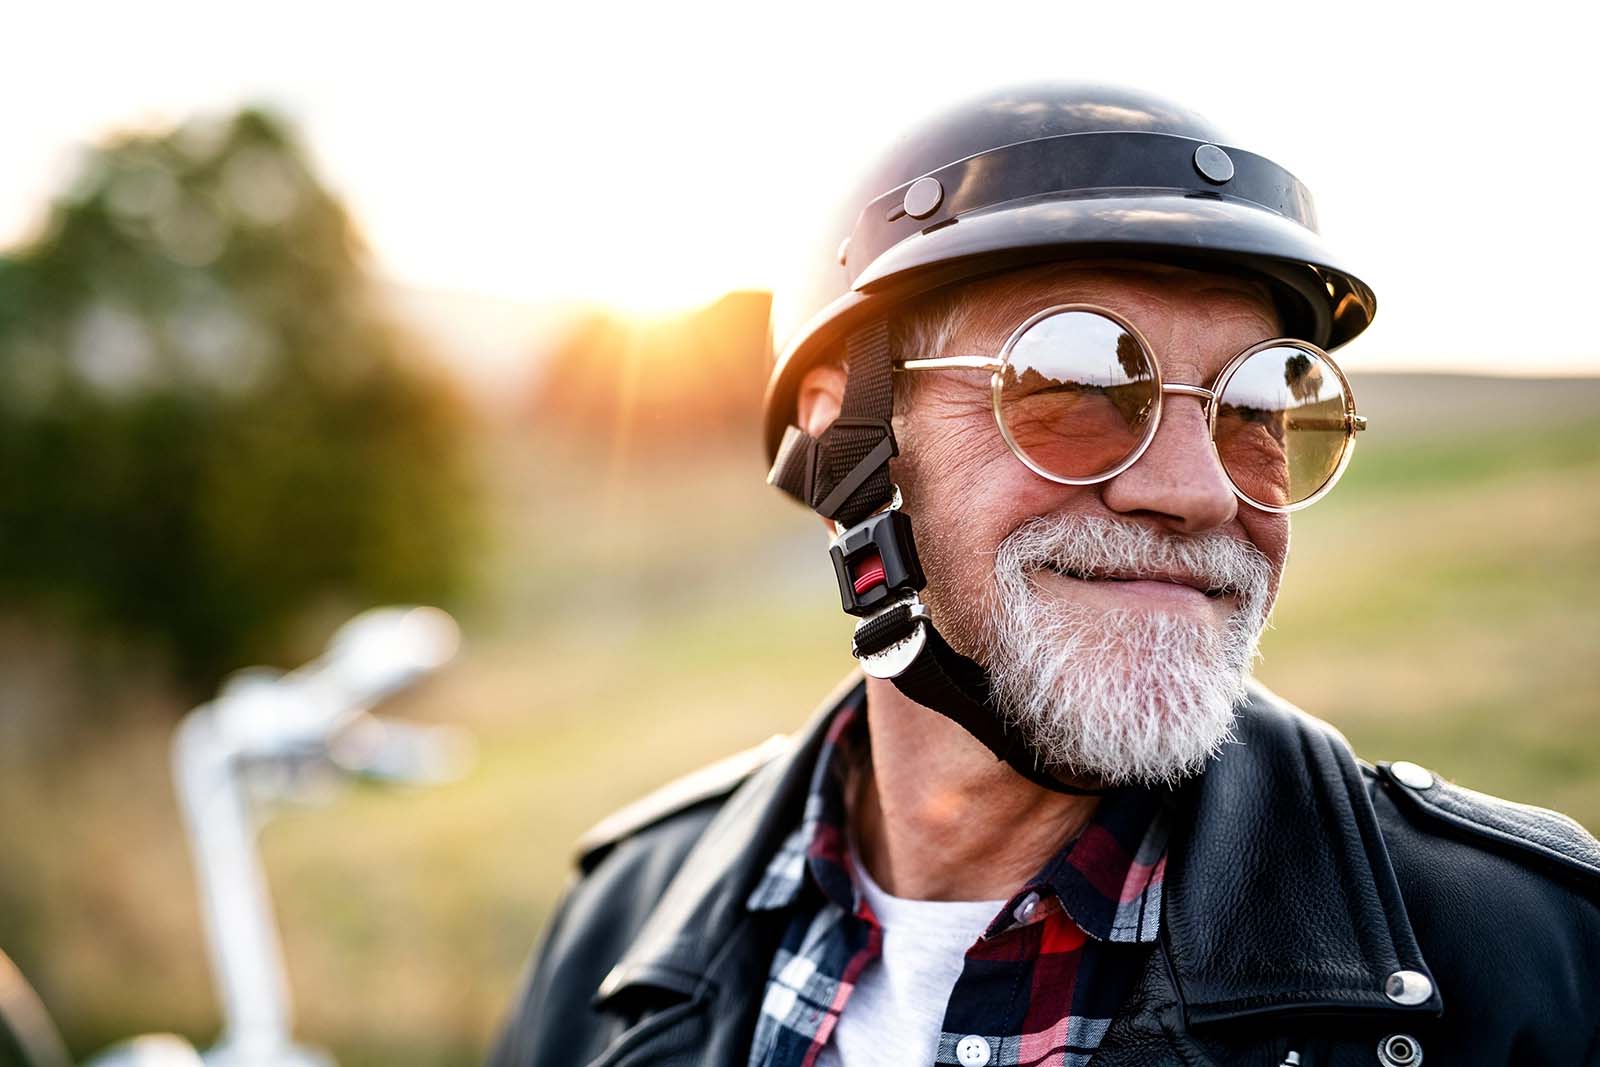 man wearing motorcycle helmet